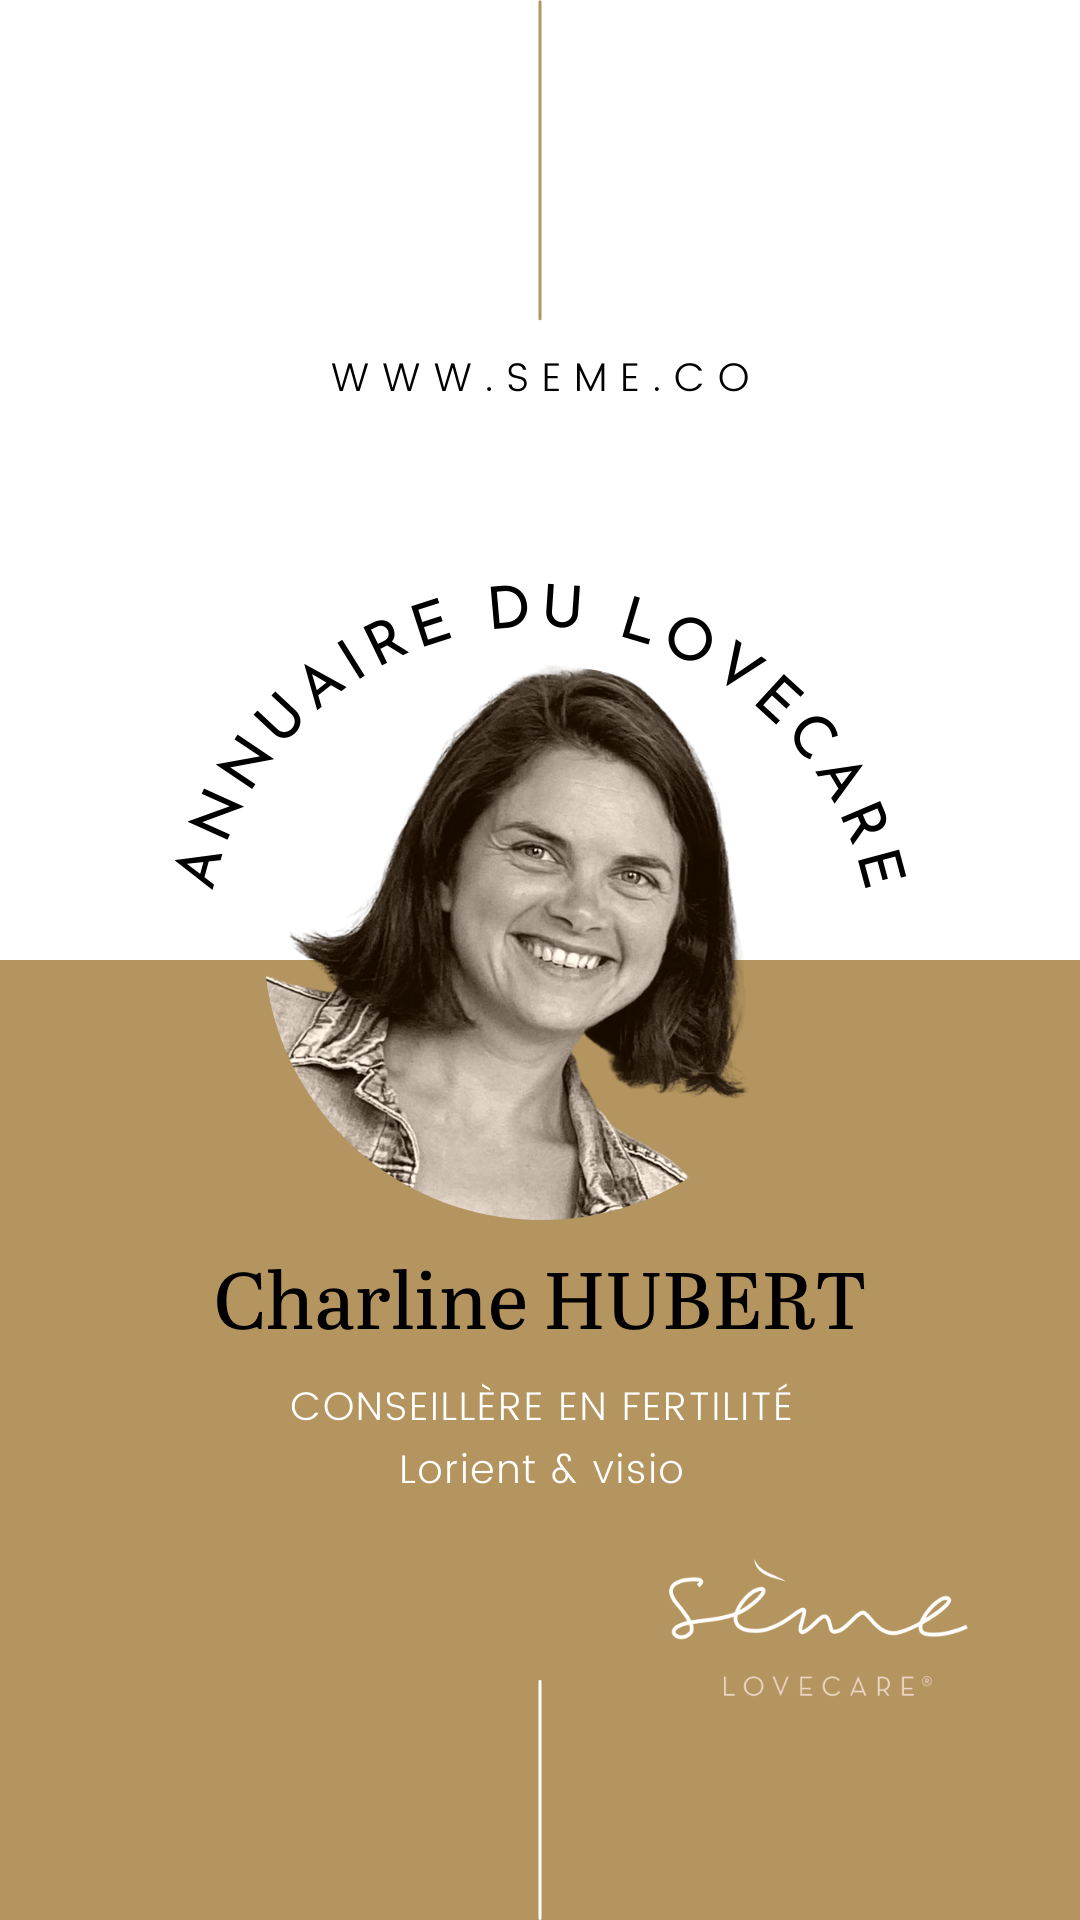 Charline Hubert